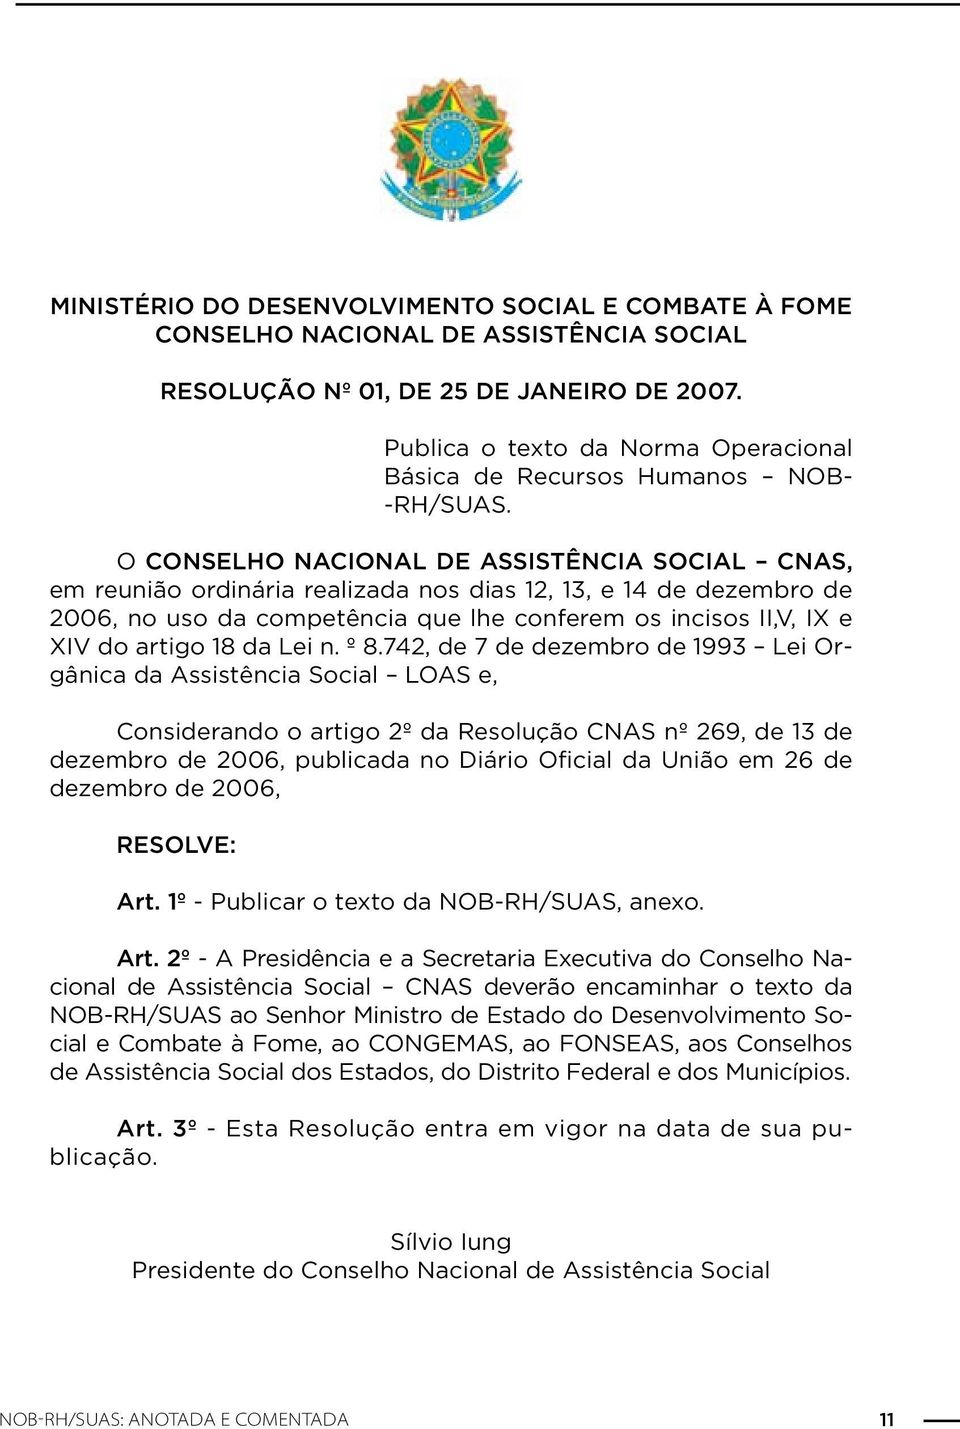 O CONSELHO NACIONAL DE ASSISTÊNCIA SOCIAL CNAS, em reunião ordinária realizada nos dias 12, 13, e 14 de dezembro de 2006, no uso da competência que lhe conferem os incisos II,V, IX e XIV do artigo 18